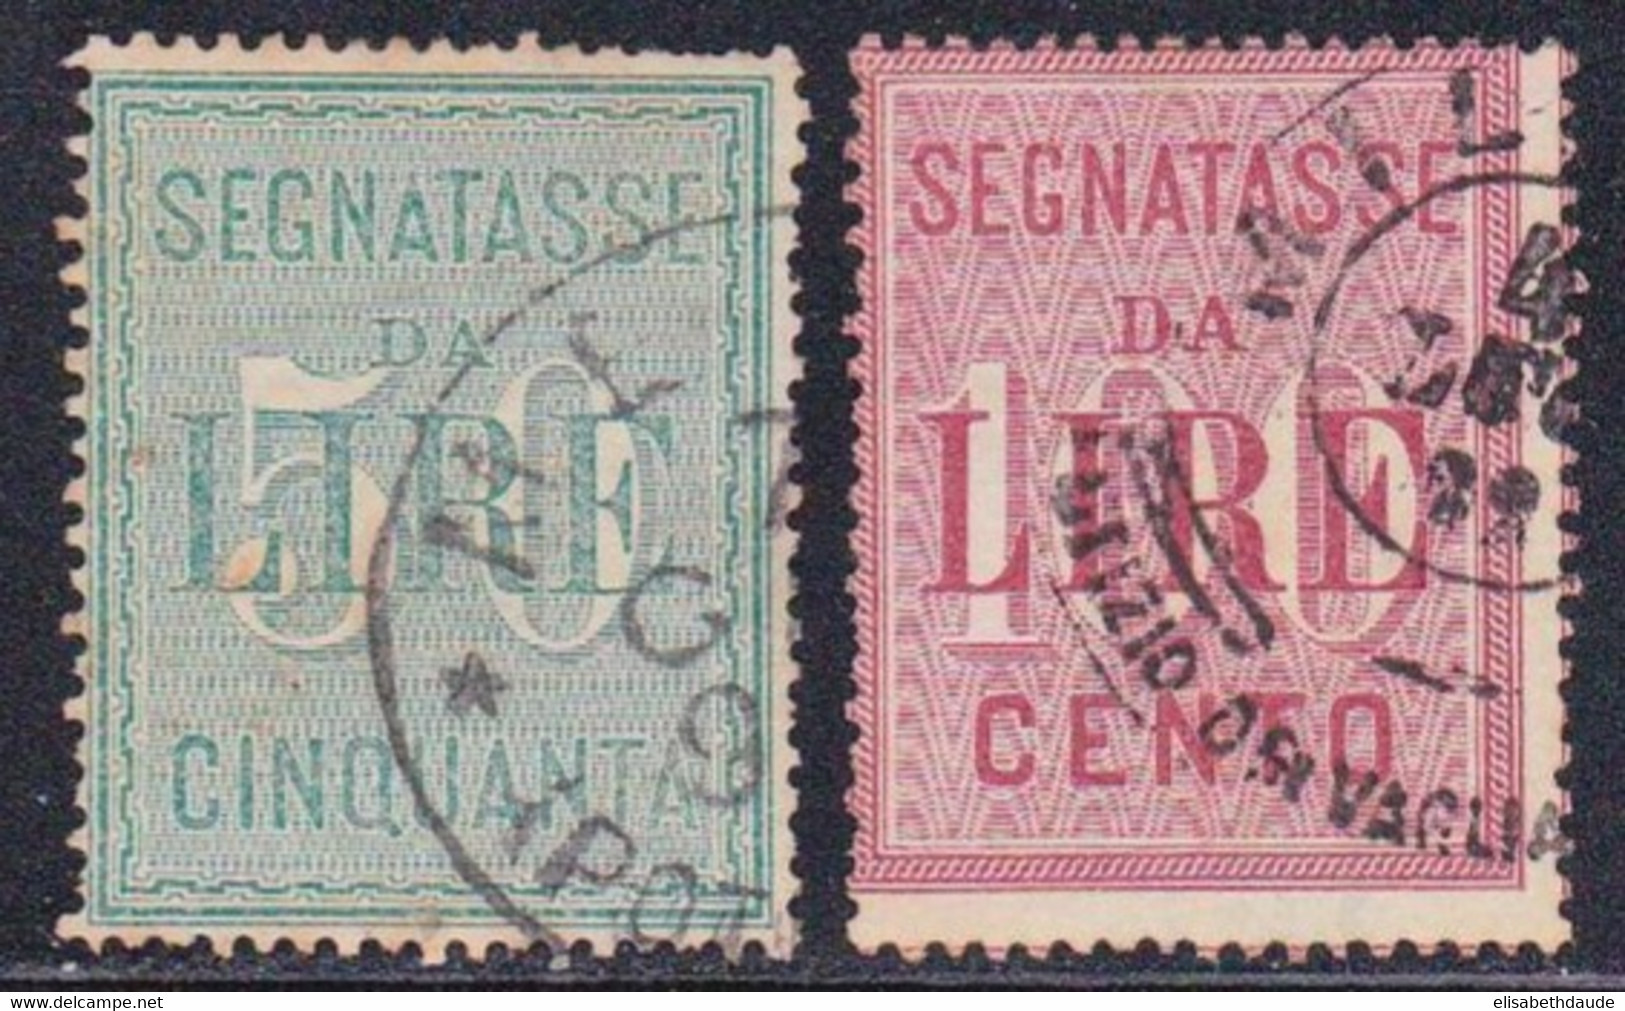 ITALIE - 1884 - YVERT N°20/21 OBLITERES - TAXE - COTE = 60 EUROS - Oblitérés